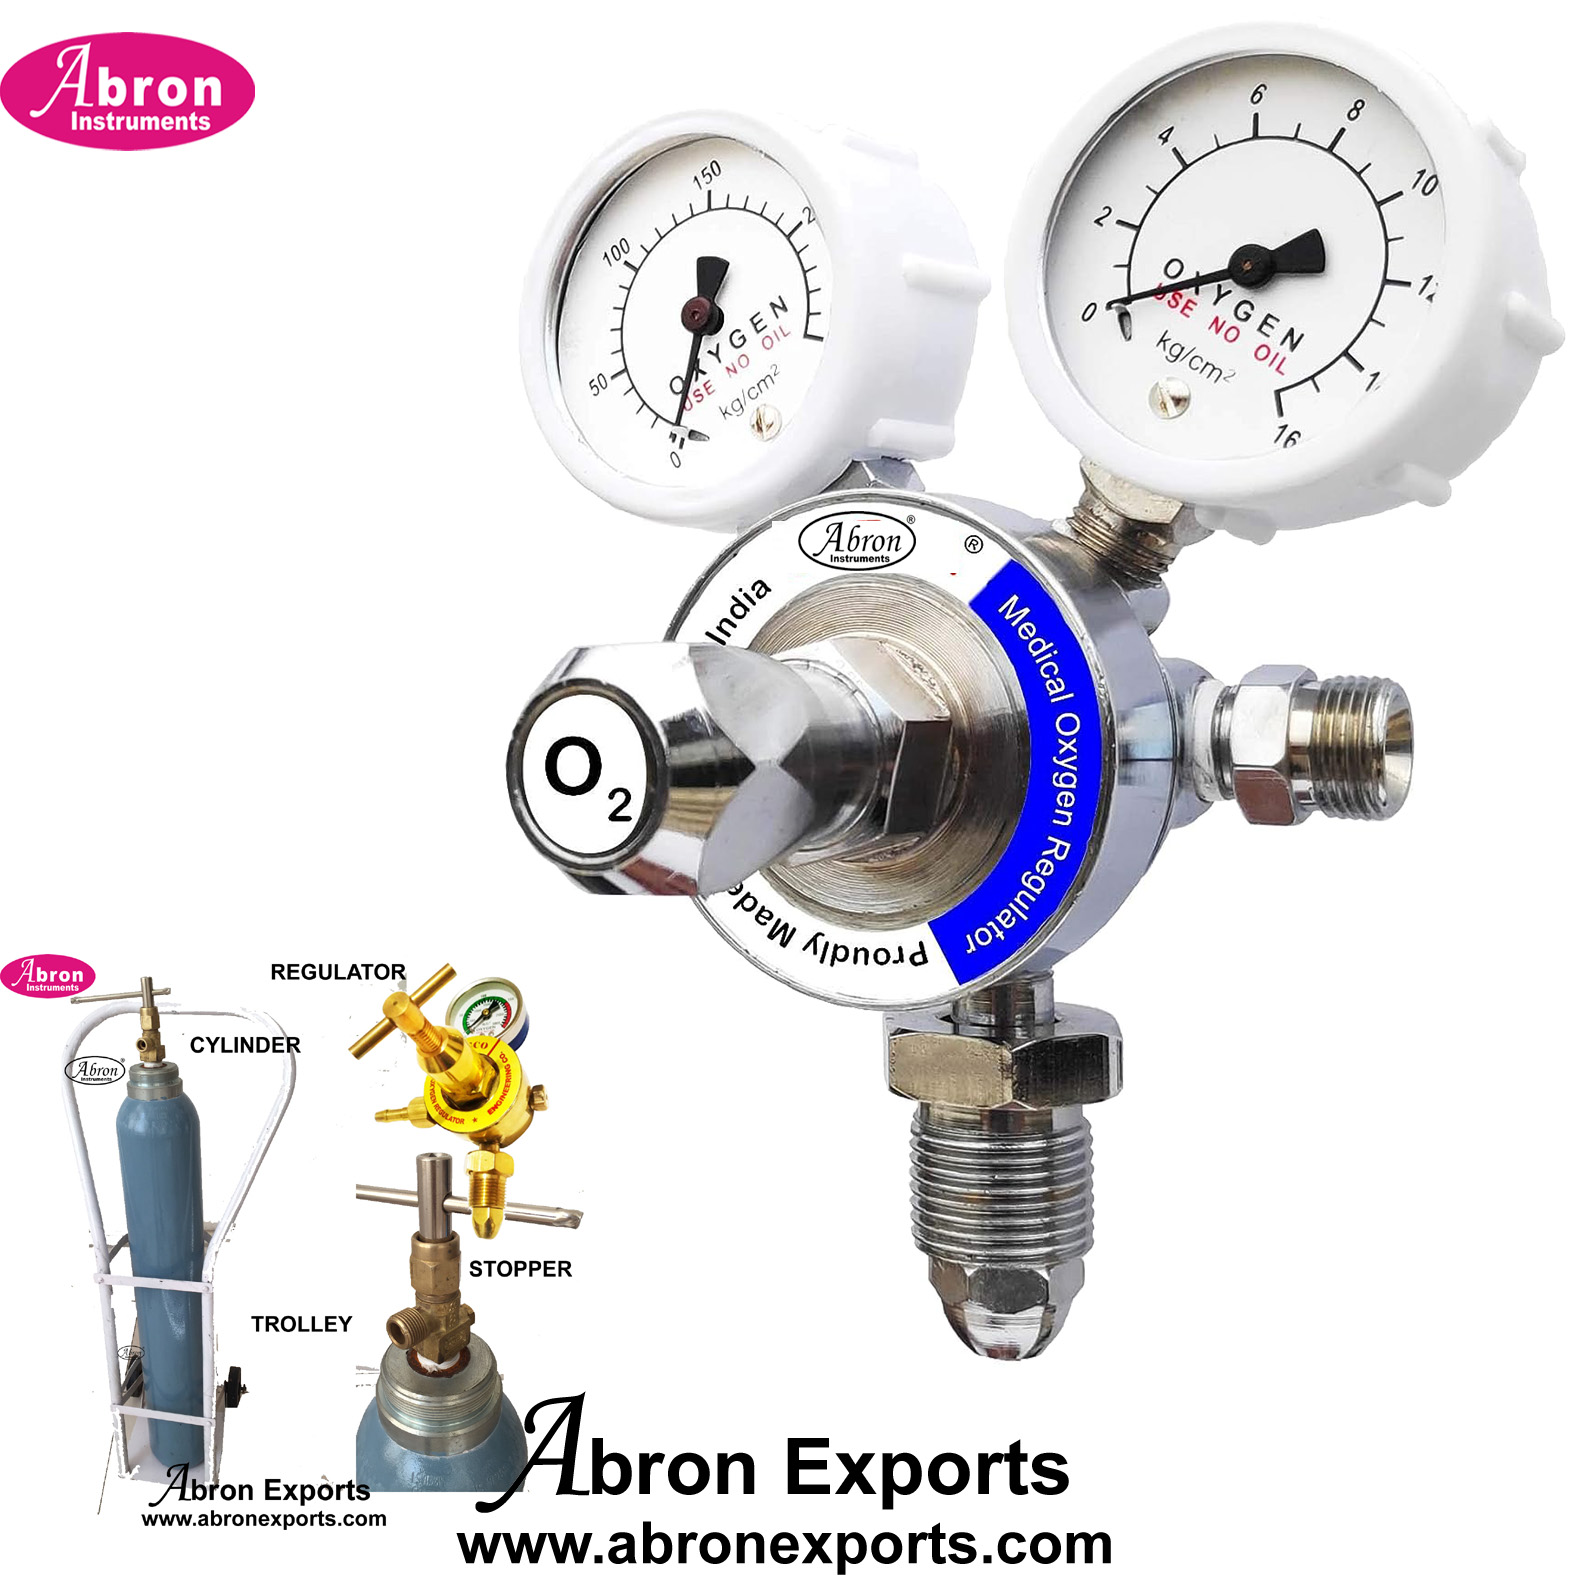 Medical Oxygen Gas Flow Meter Double Gauge Medical Pressure Regulator Output Preset at 4 bar for cylinder Abron ABM-1123G 